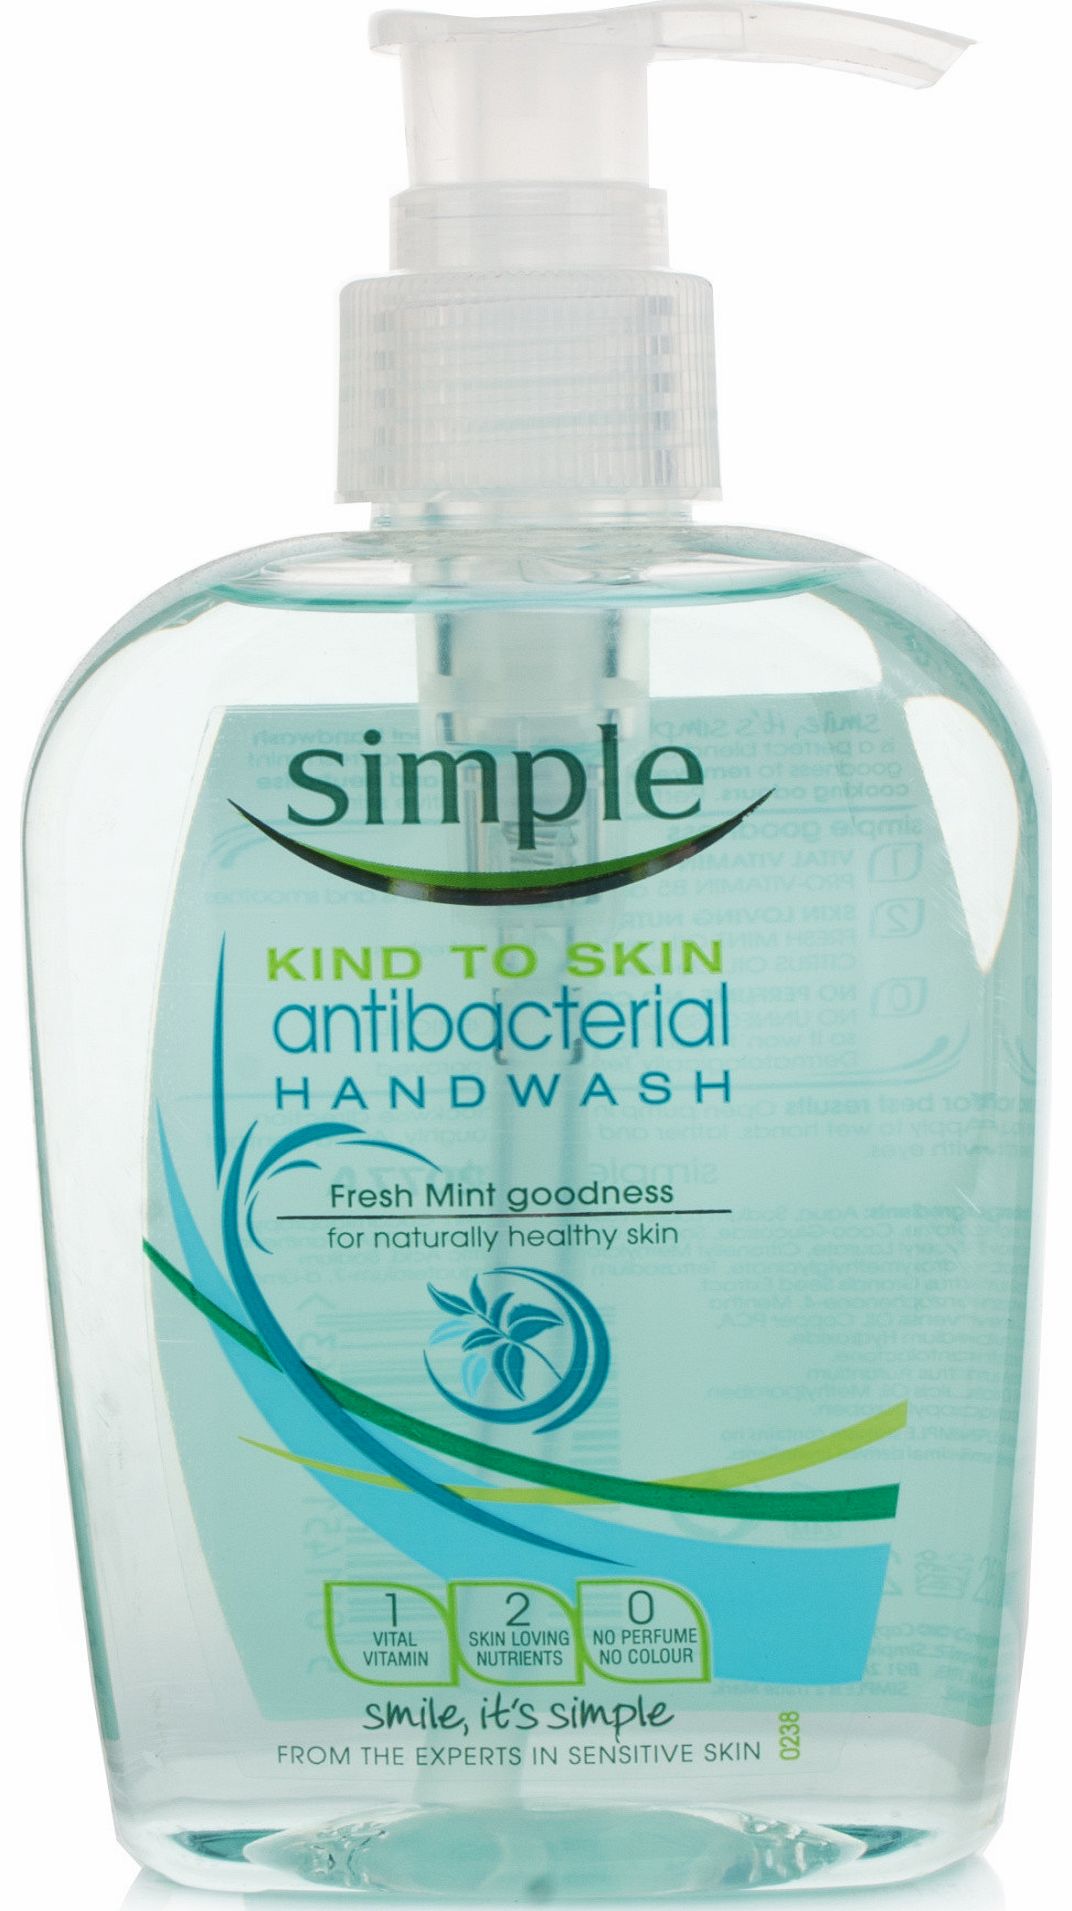 Simple Antibacterial Handwash